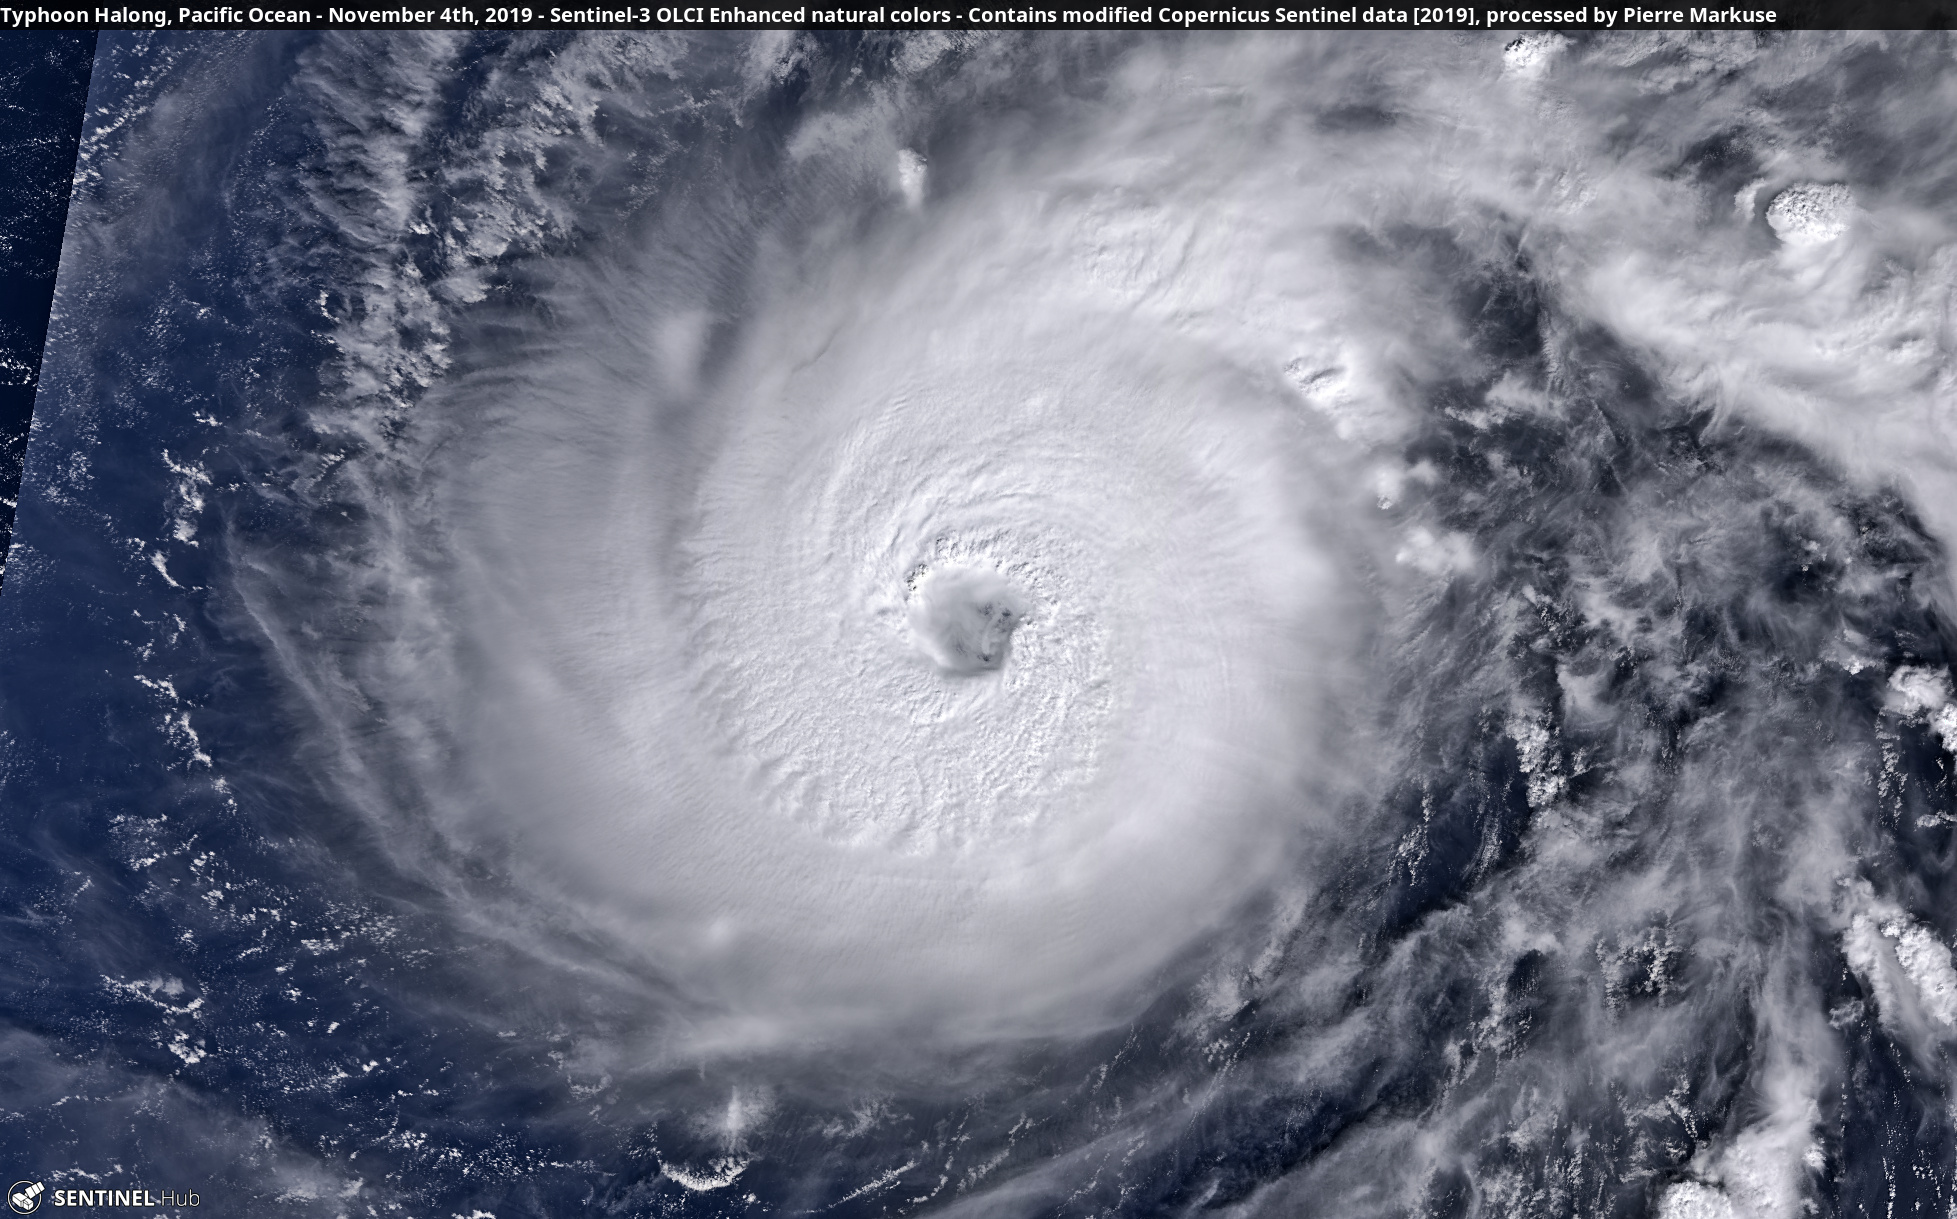 Le super-typhon Halong photographié par le satellite Copernicus Sentinel-1 au-dessus du Pacifique, le 4 novembre 2019. L’image a été retravaillée par Pierre Markuse © Copernicus Sentinel Data, Pierre Markuse